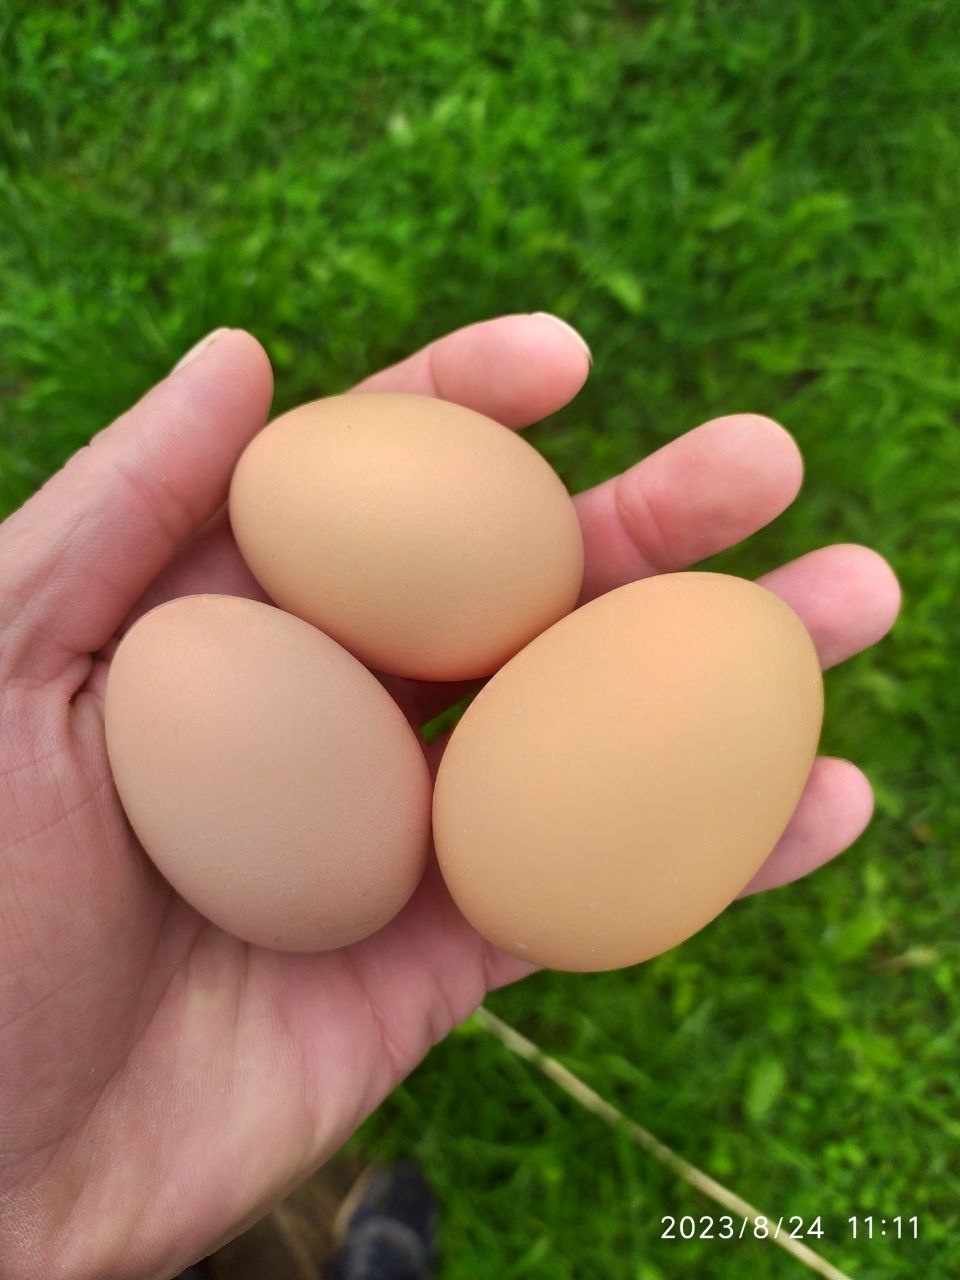 Цены на яйца | Пикабу